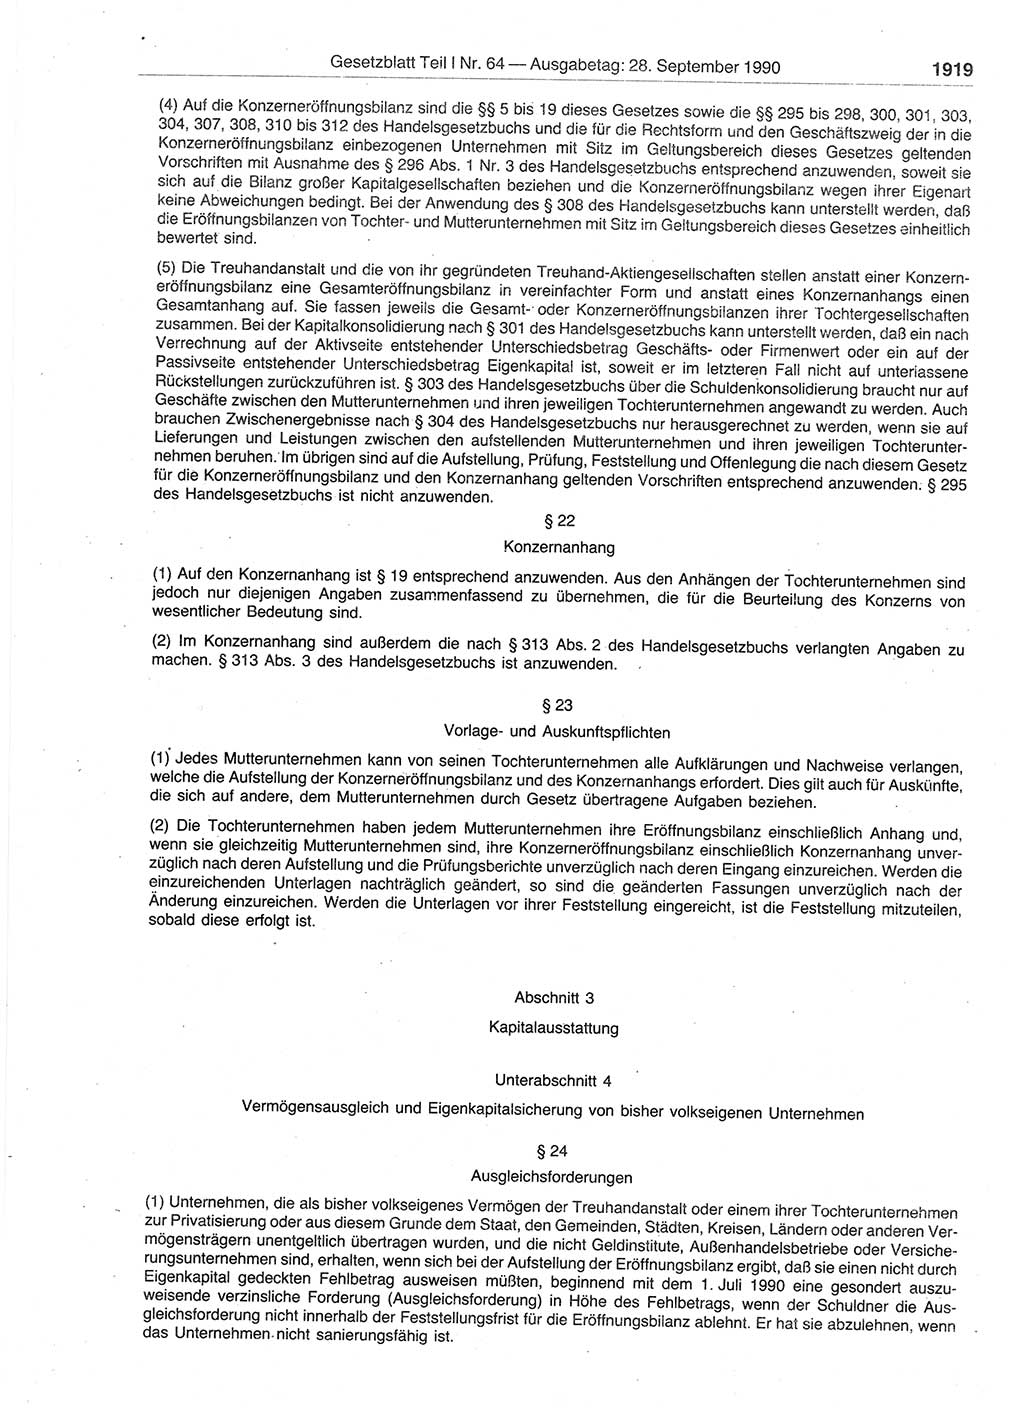 Gesetzblatt (GBl.) der Deutschen Demokratischen Republik (DDR) Teil Ⅰ 1990, Seite 1919 (GBl. DDR Ⅰ 1990, S. 1919)